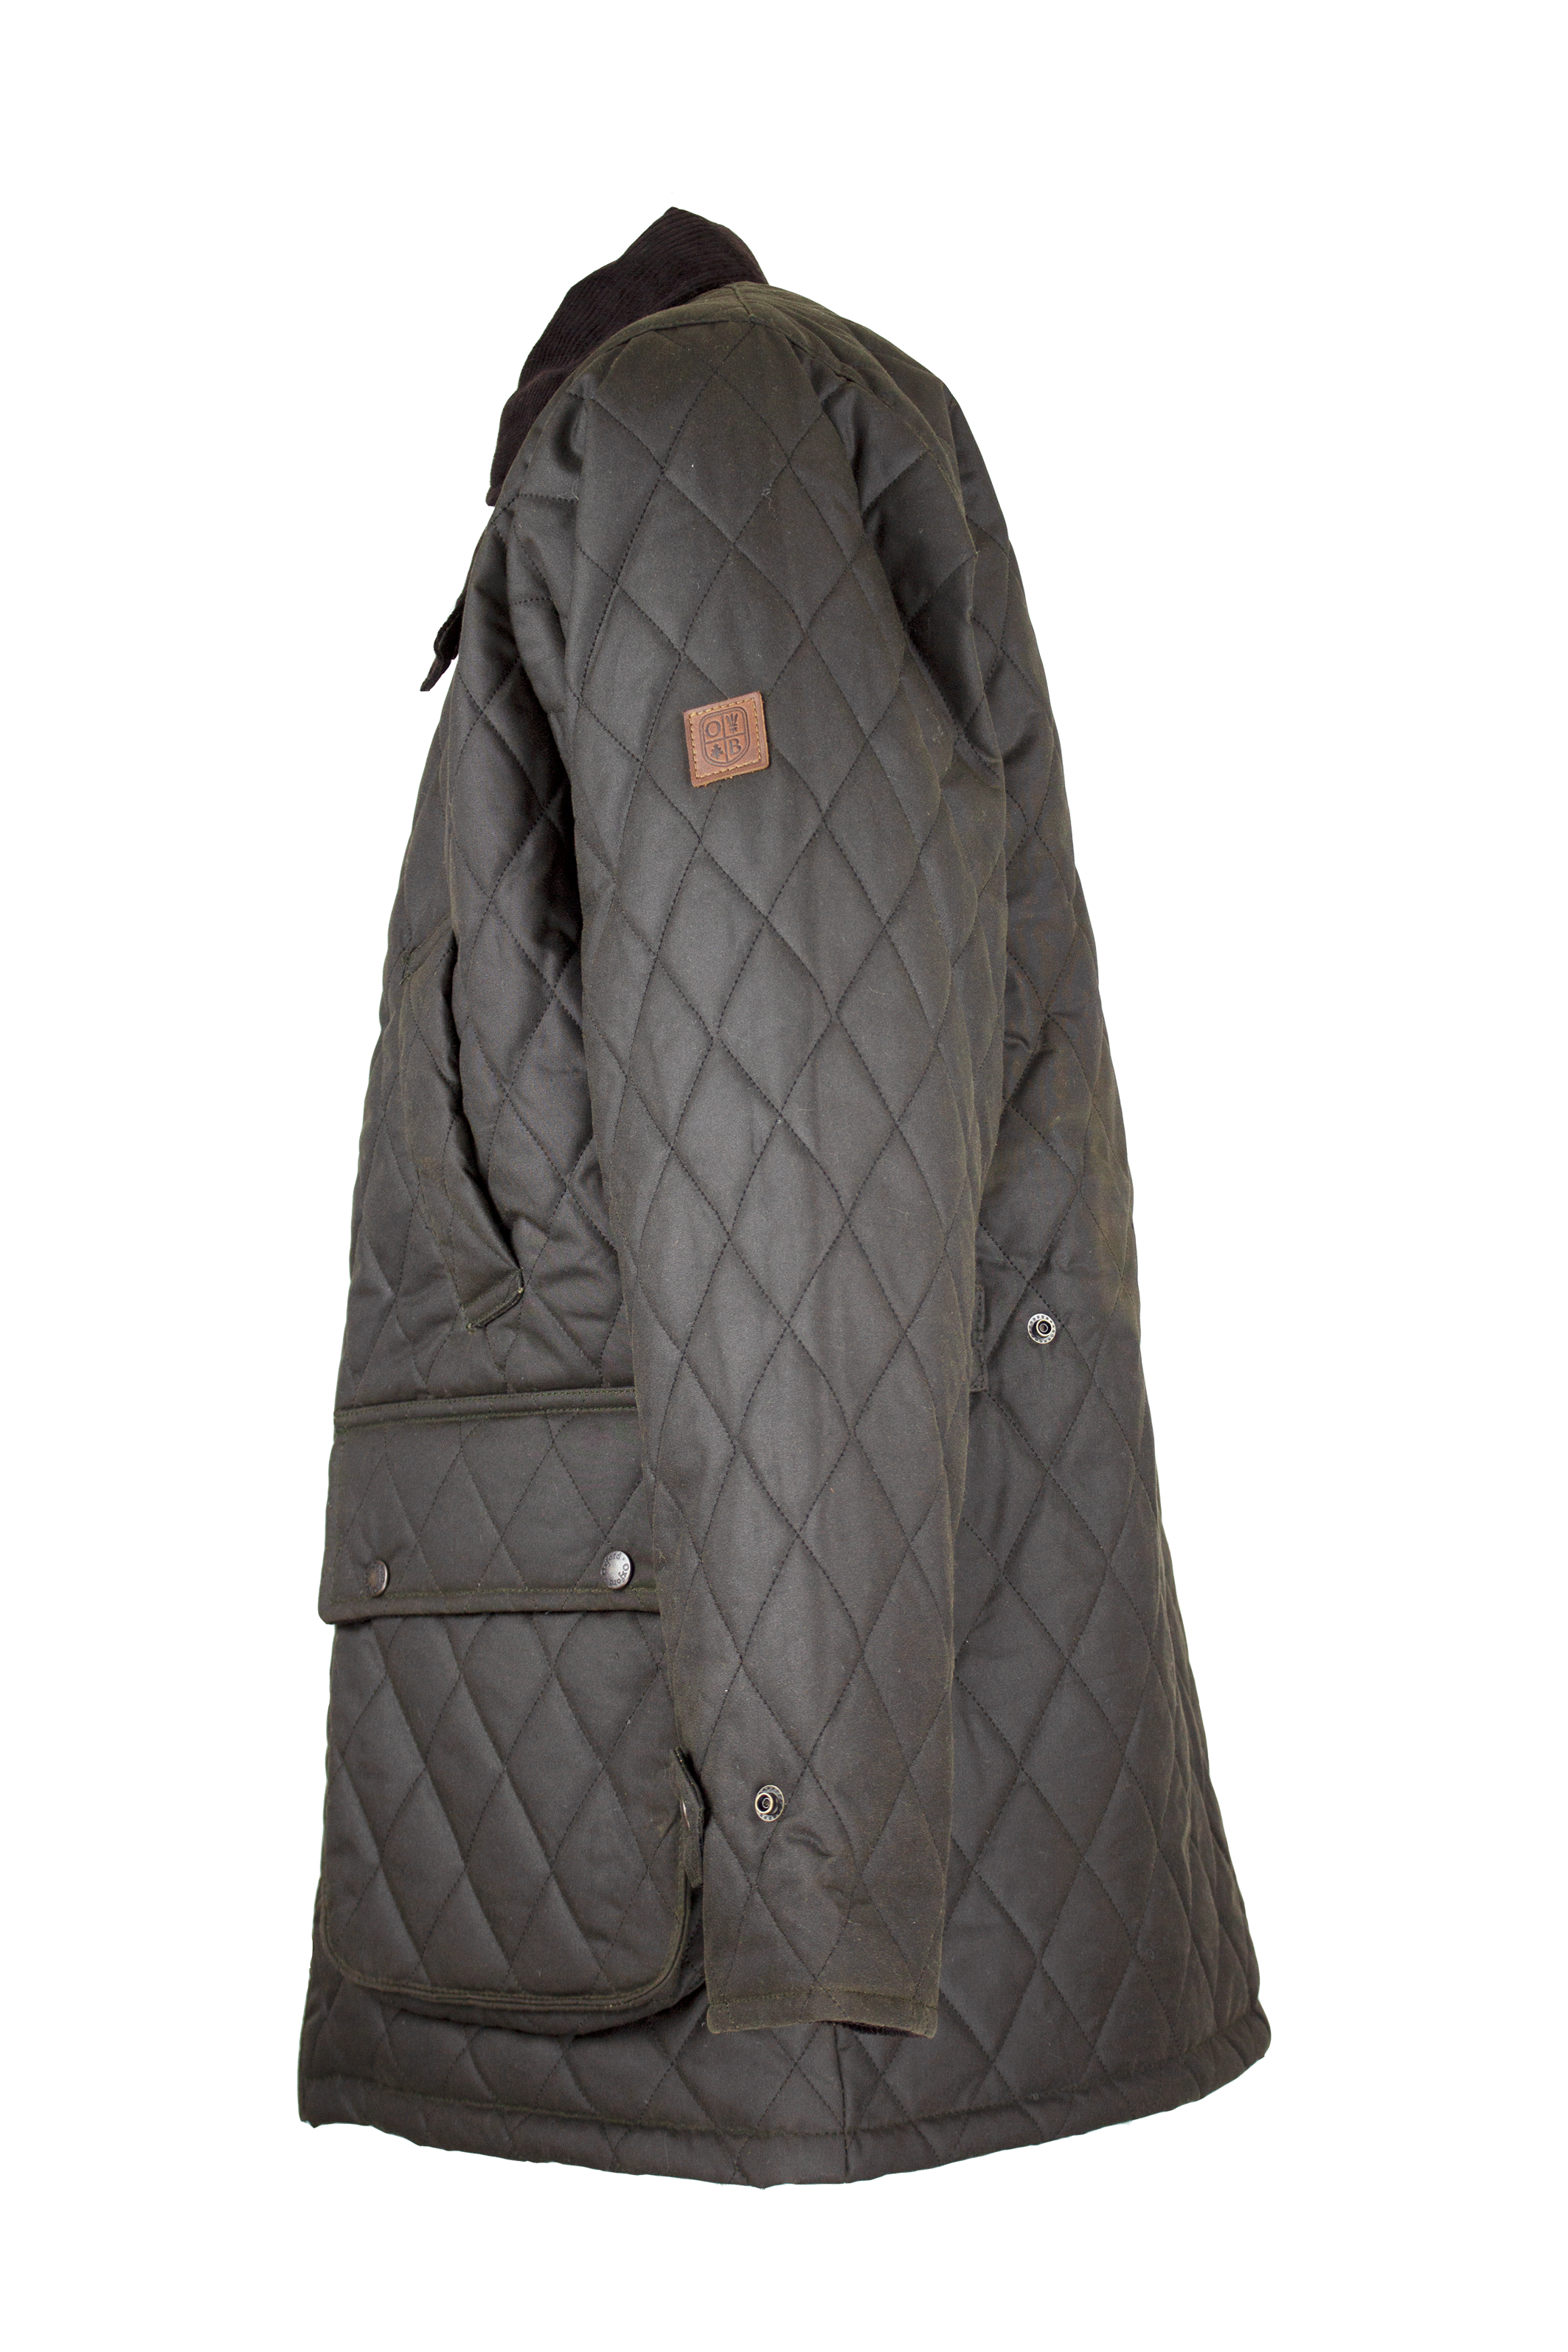 W27 - Men's Aarhus Quilted Wax Coat - DARK OLIVE